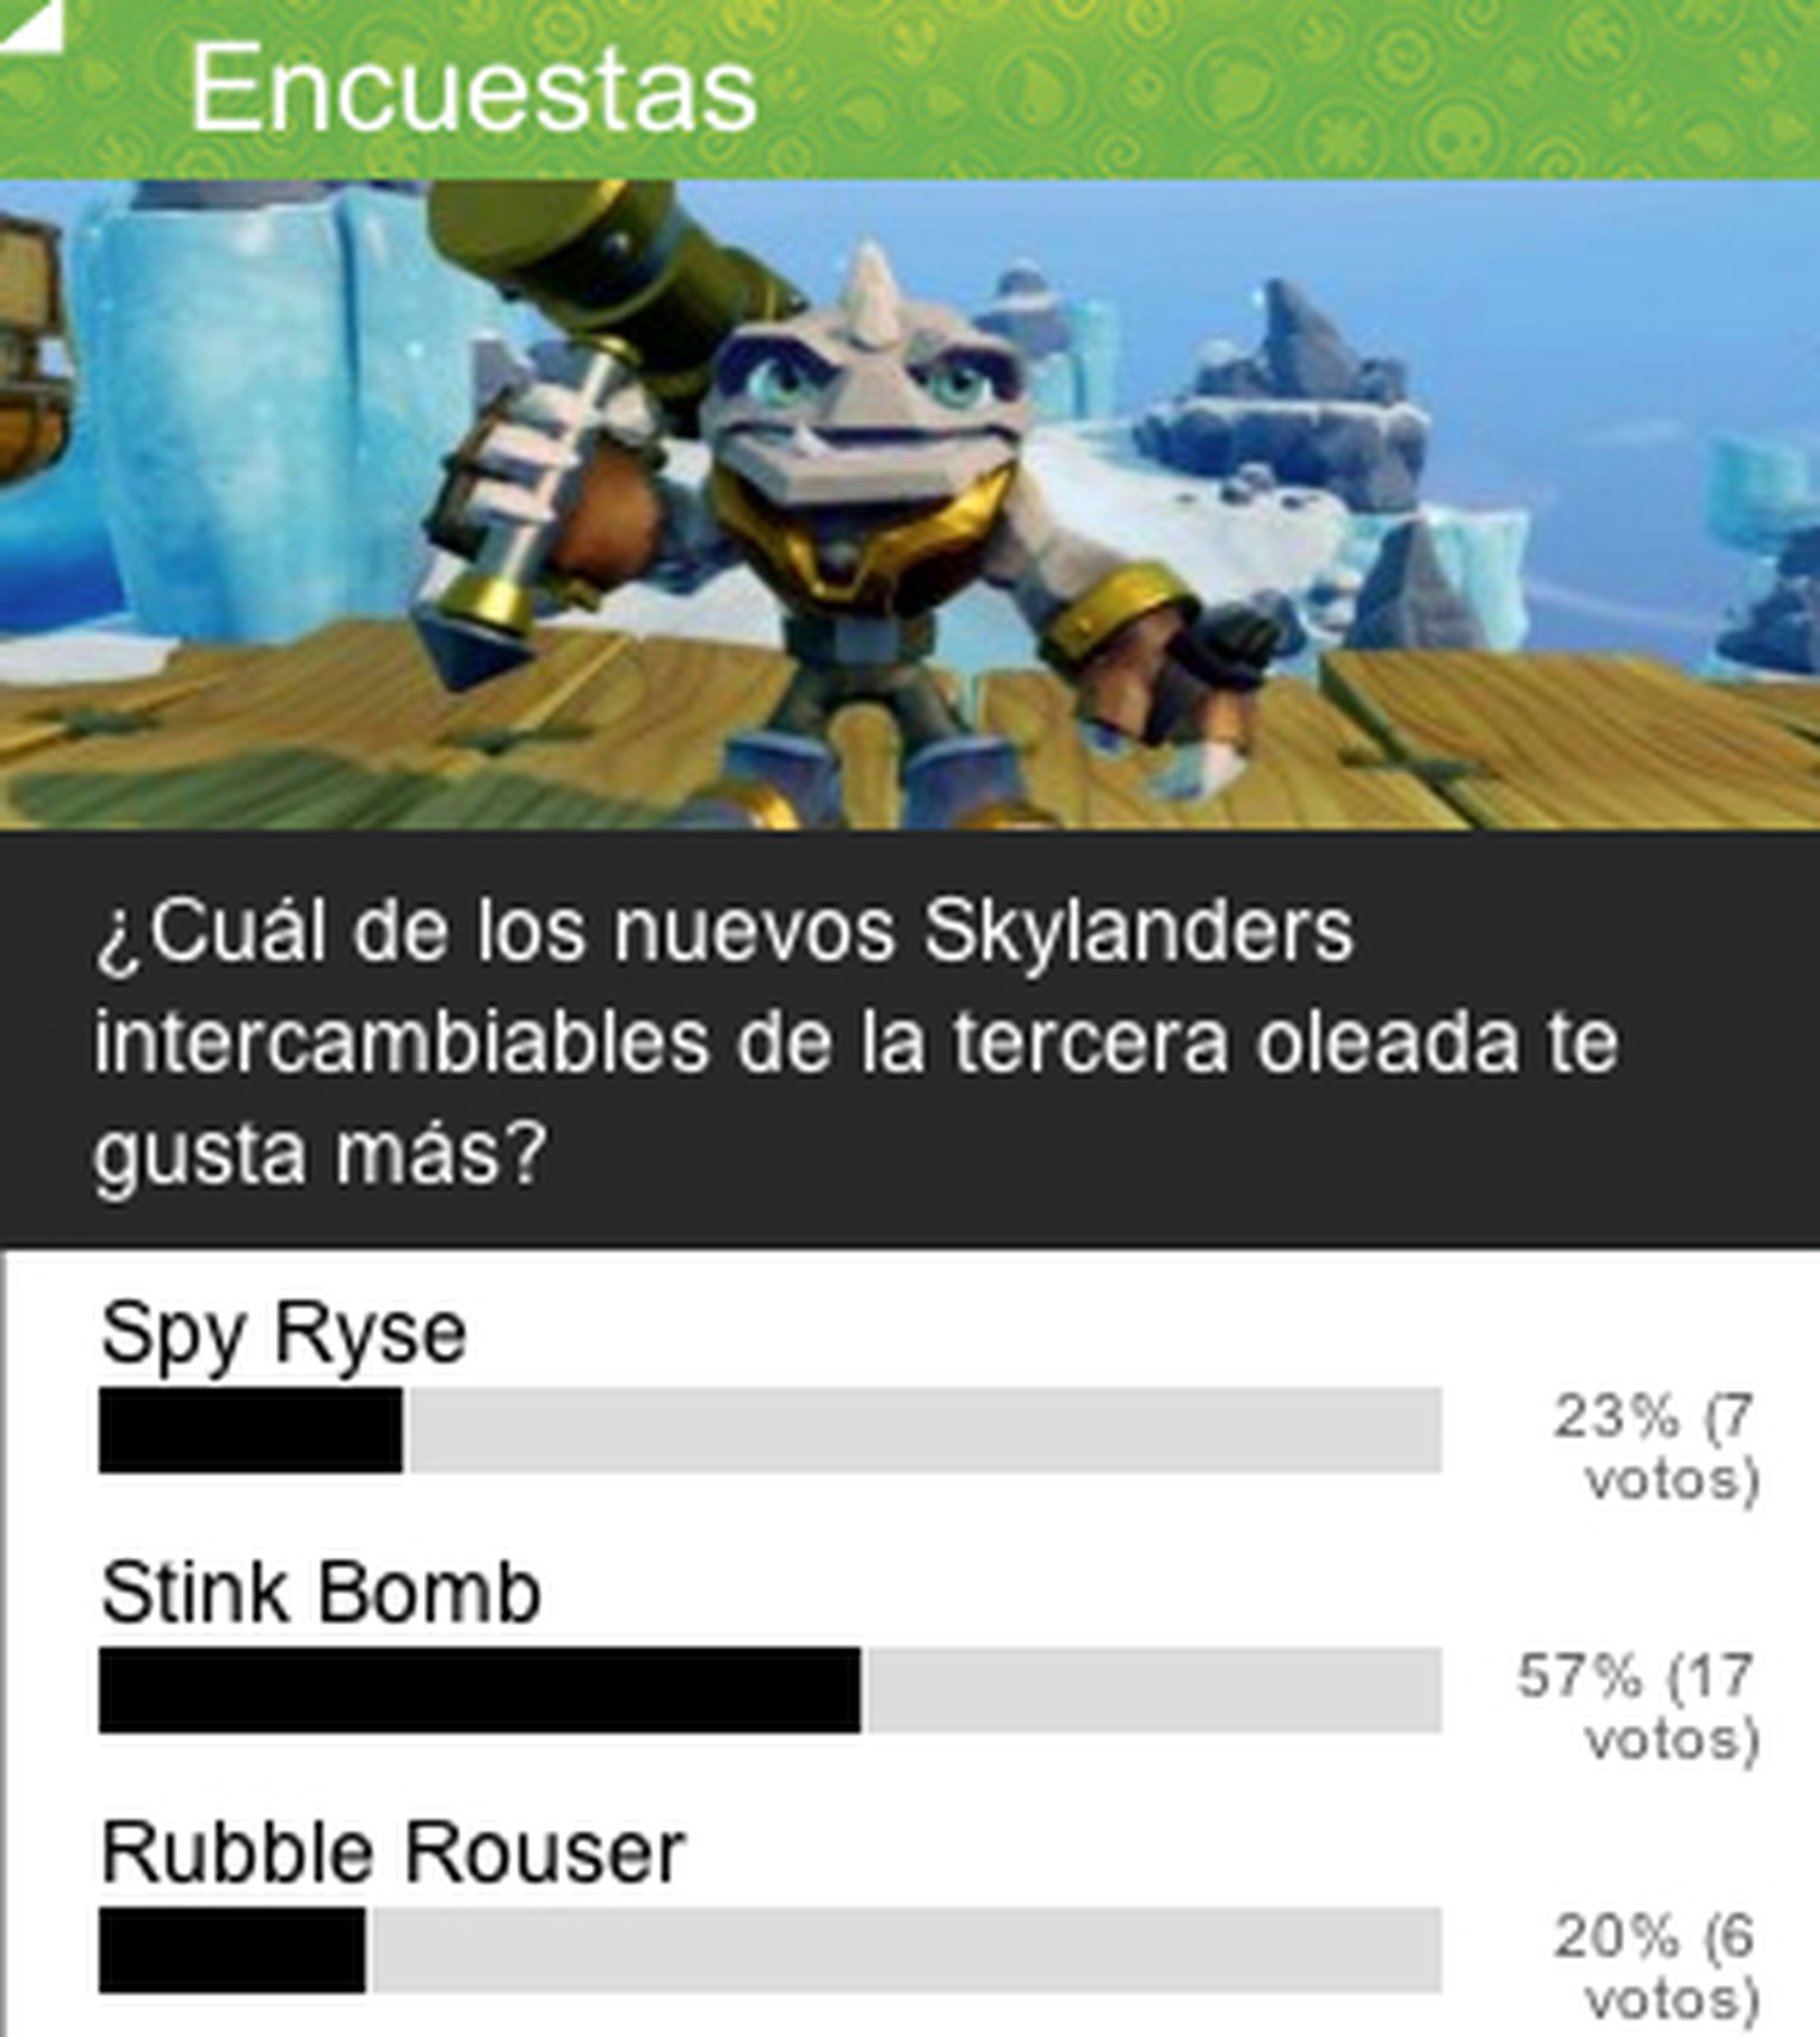 Encuesta Skylanders: Stink Bomb es vuestro favorito